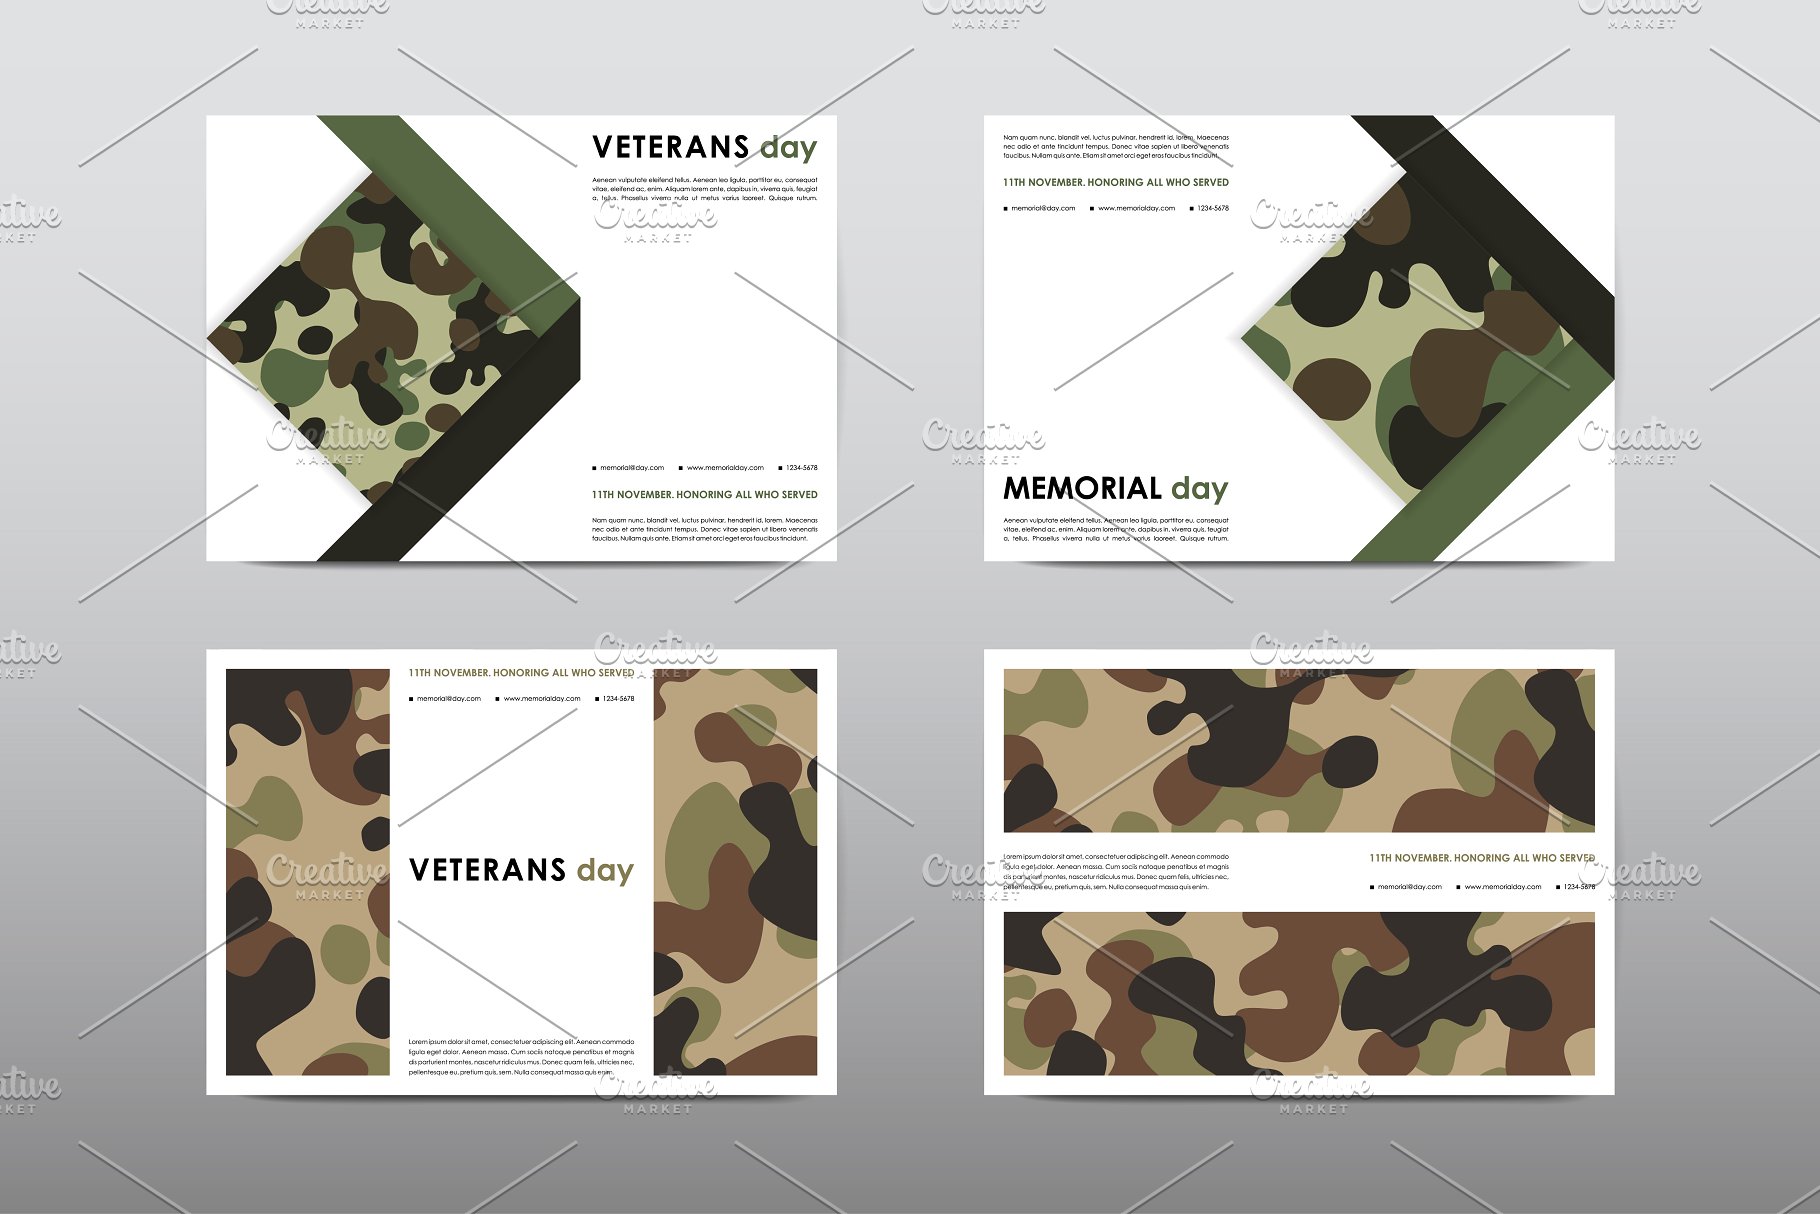 40+老兵节军人宣传小册模板 Veteran’s Day Brochures Bundle插图37